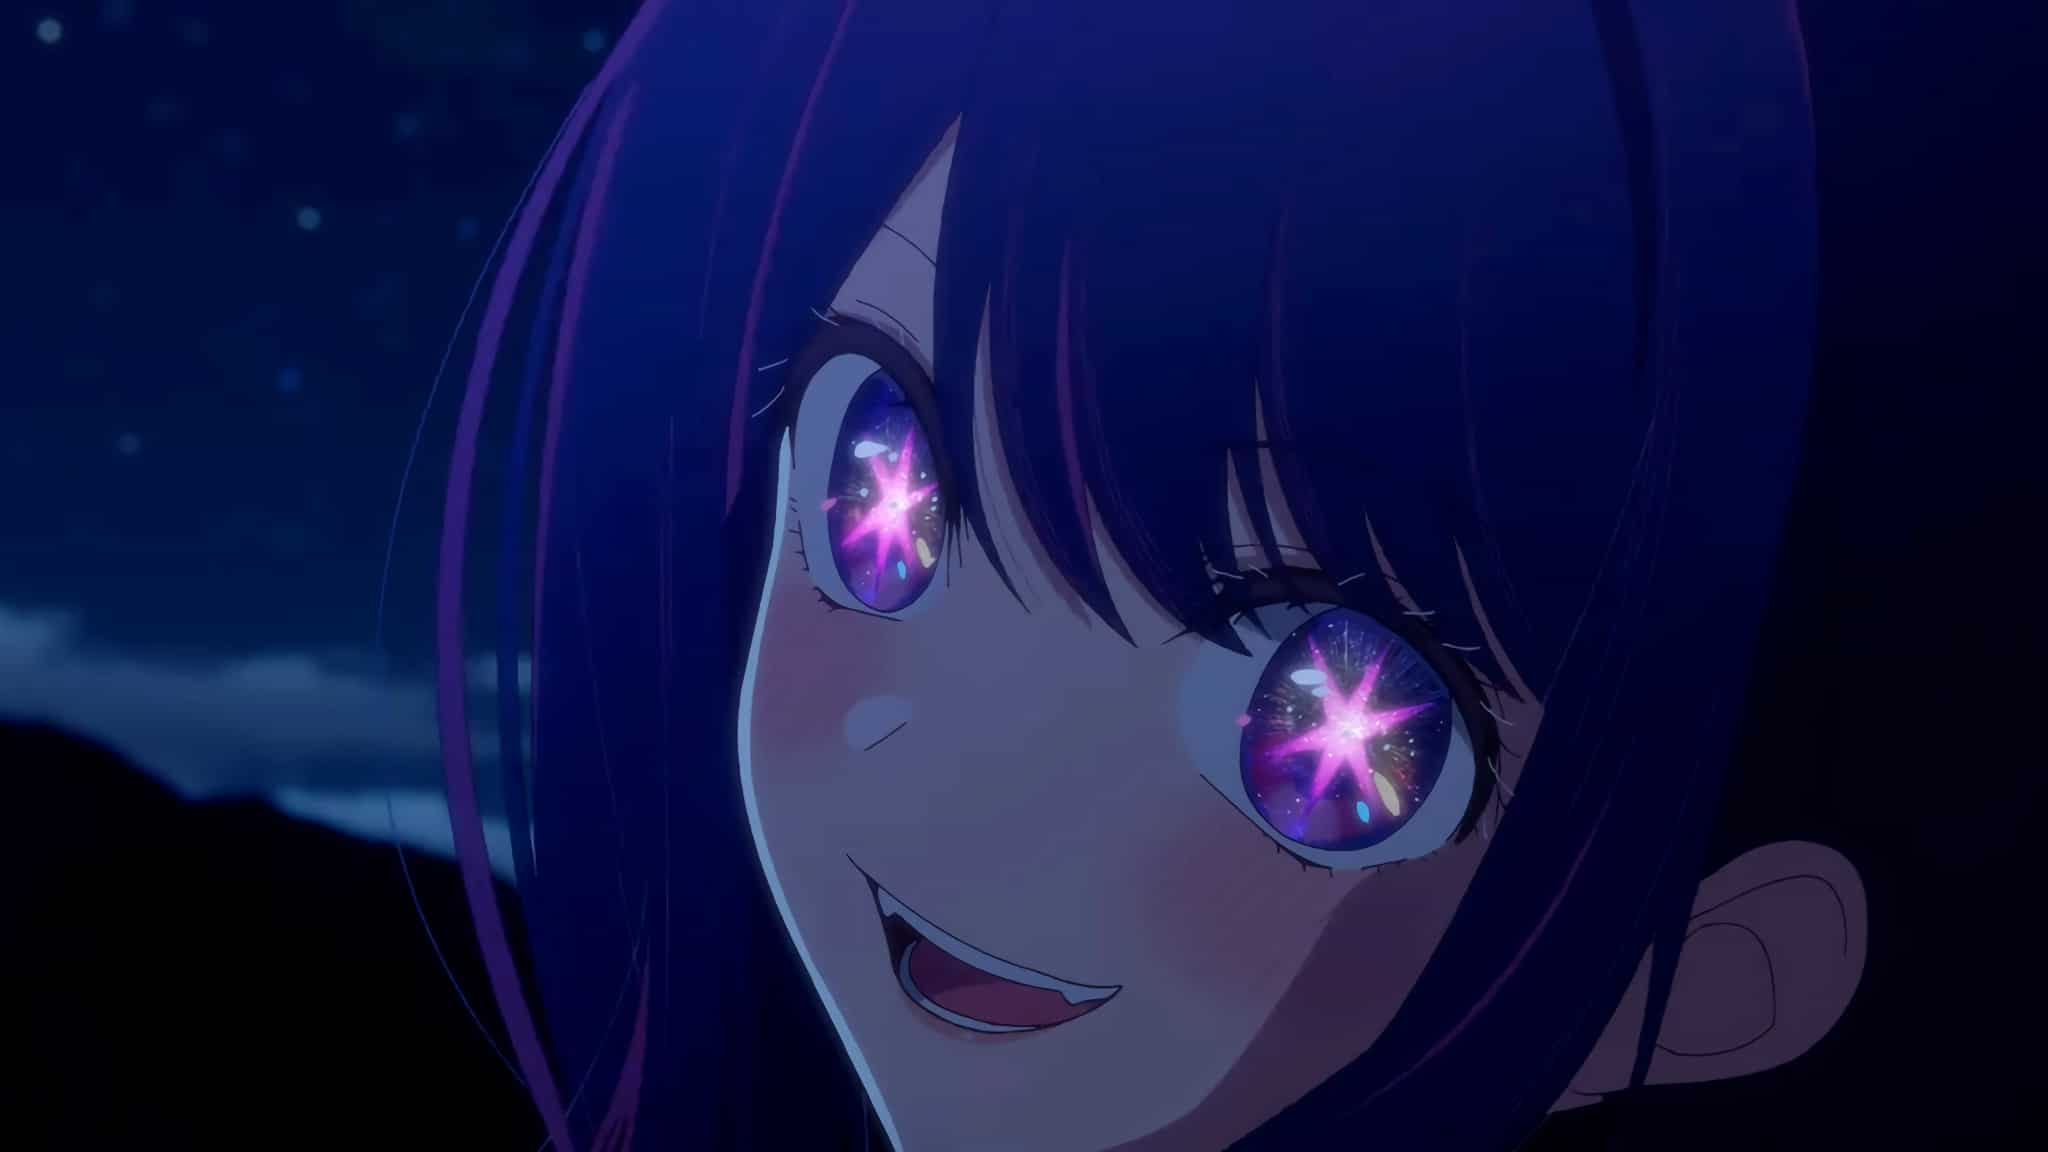 O Significado das Estrelas nos Olhos dos Personagens Pt.3 - Oshi No Ko # anime 